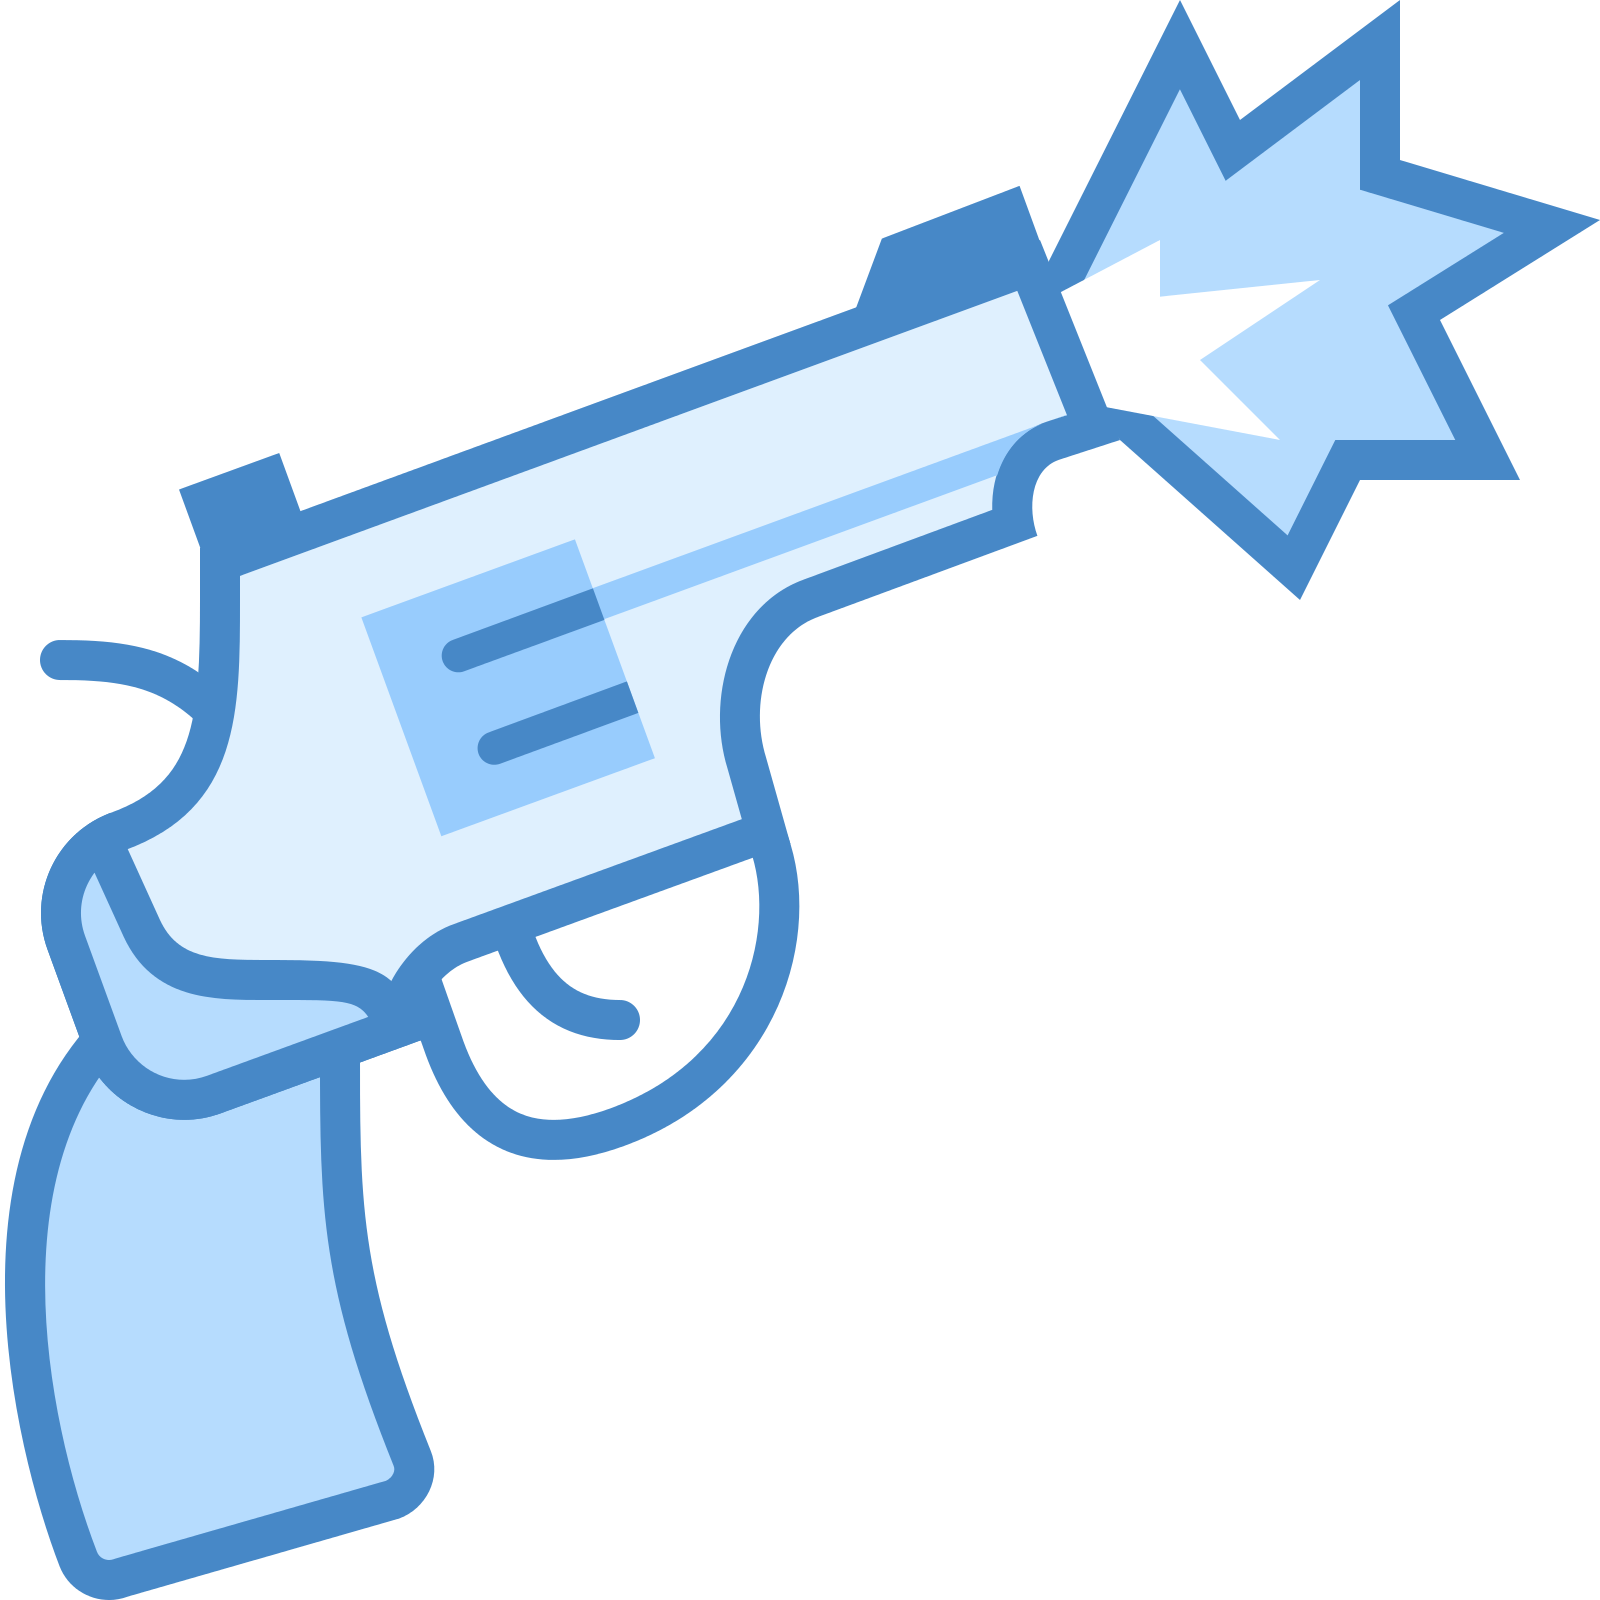 A Blue And White Cartoon Of A Gun